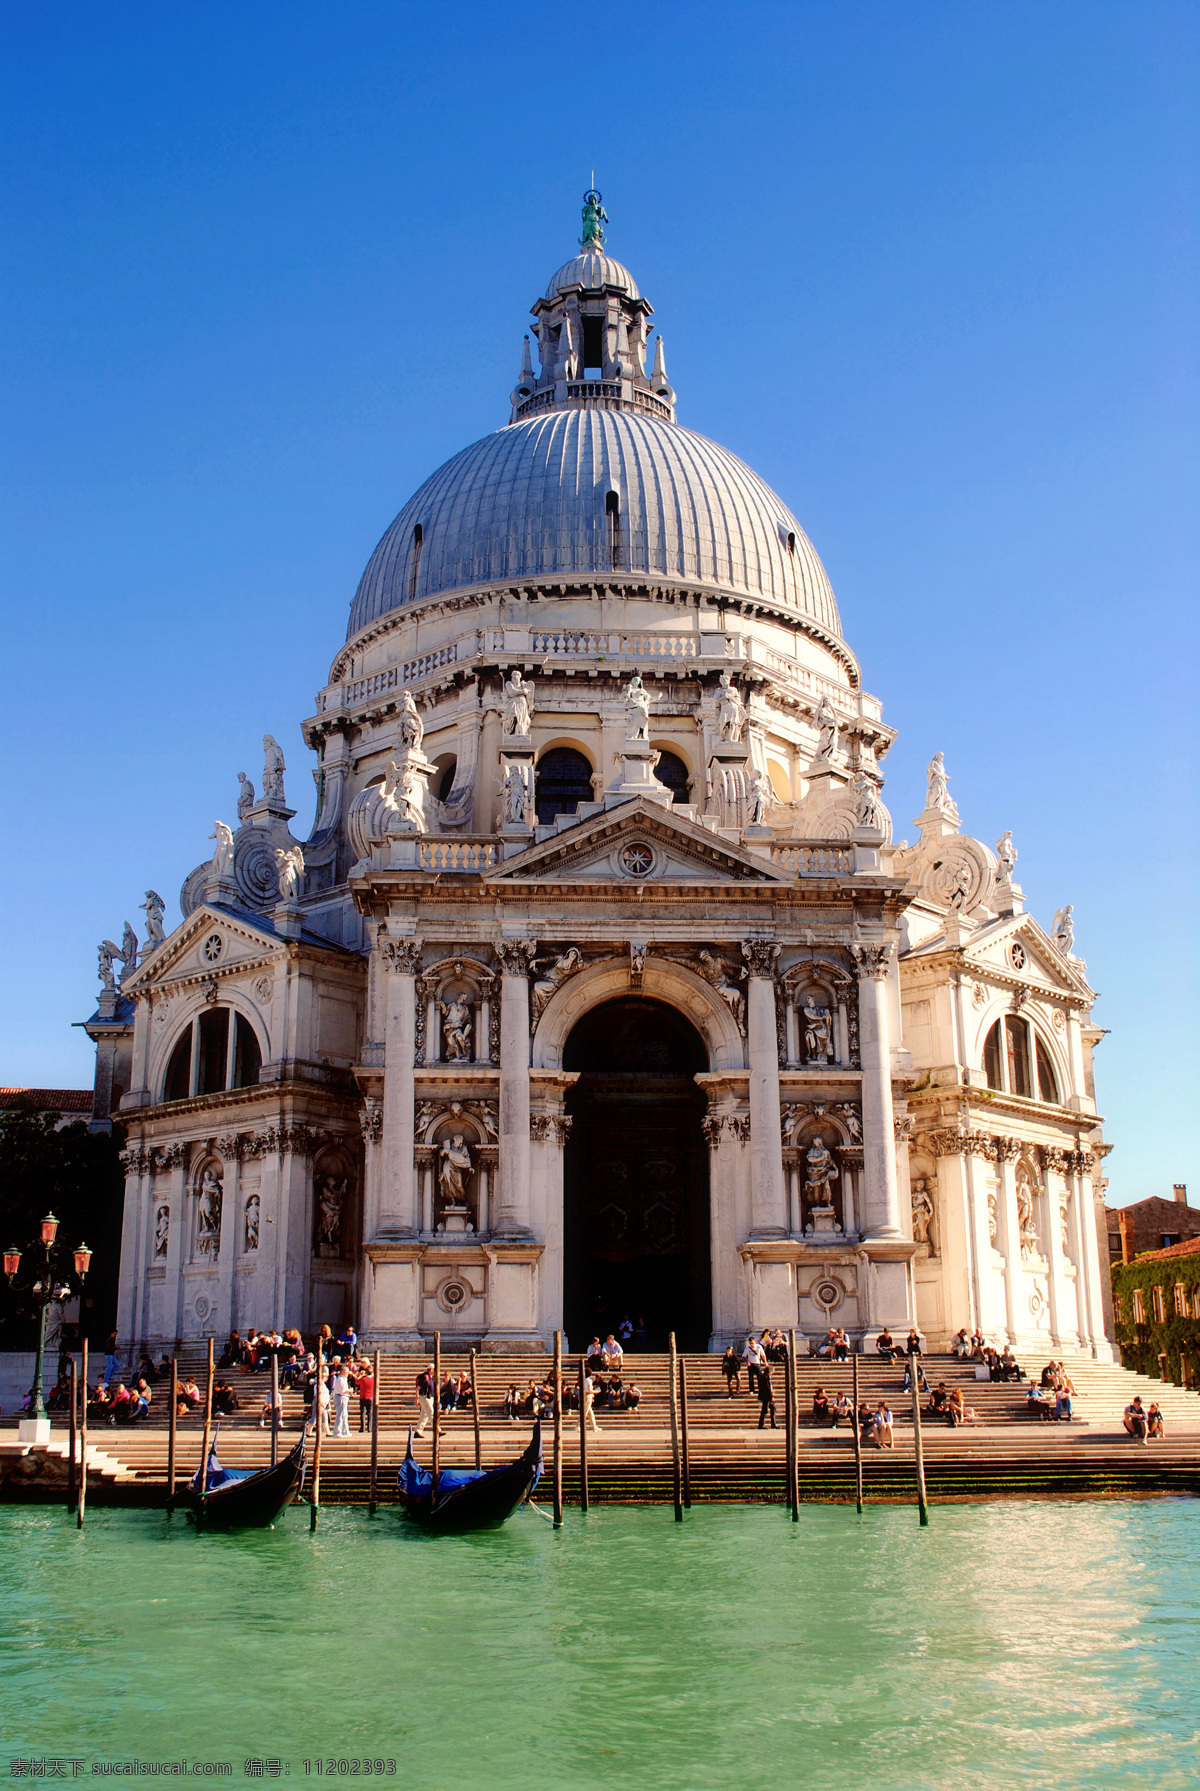 意大利 威尼斯 教堂 禁止 商用 威尼斯风光 地中海风情 度假旅游 意大利风情 城堡 建筑 欧式 蓝天 大海 自然风景 旅游摄影 建筑摄影 建筑园林